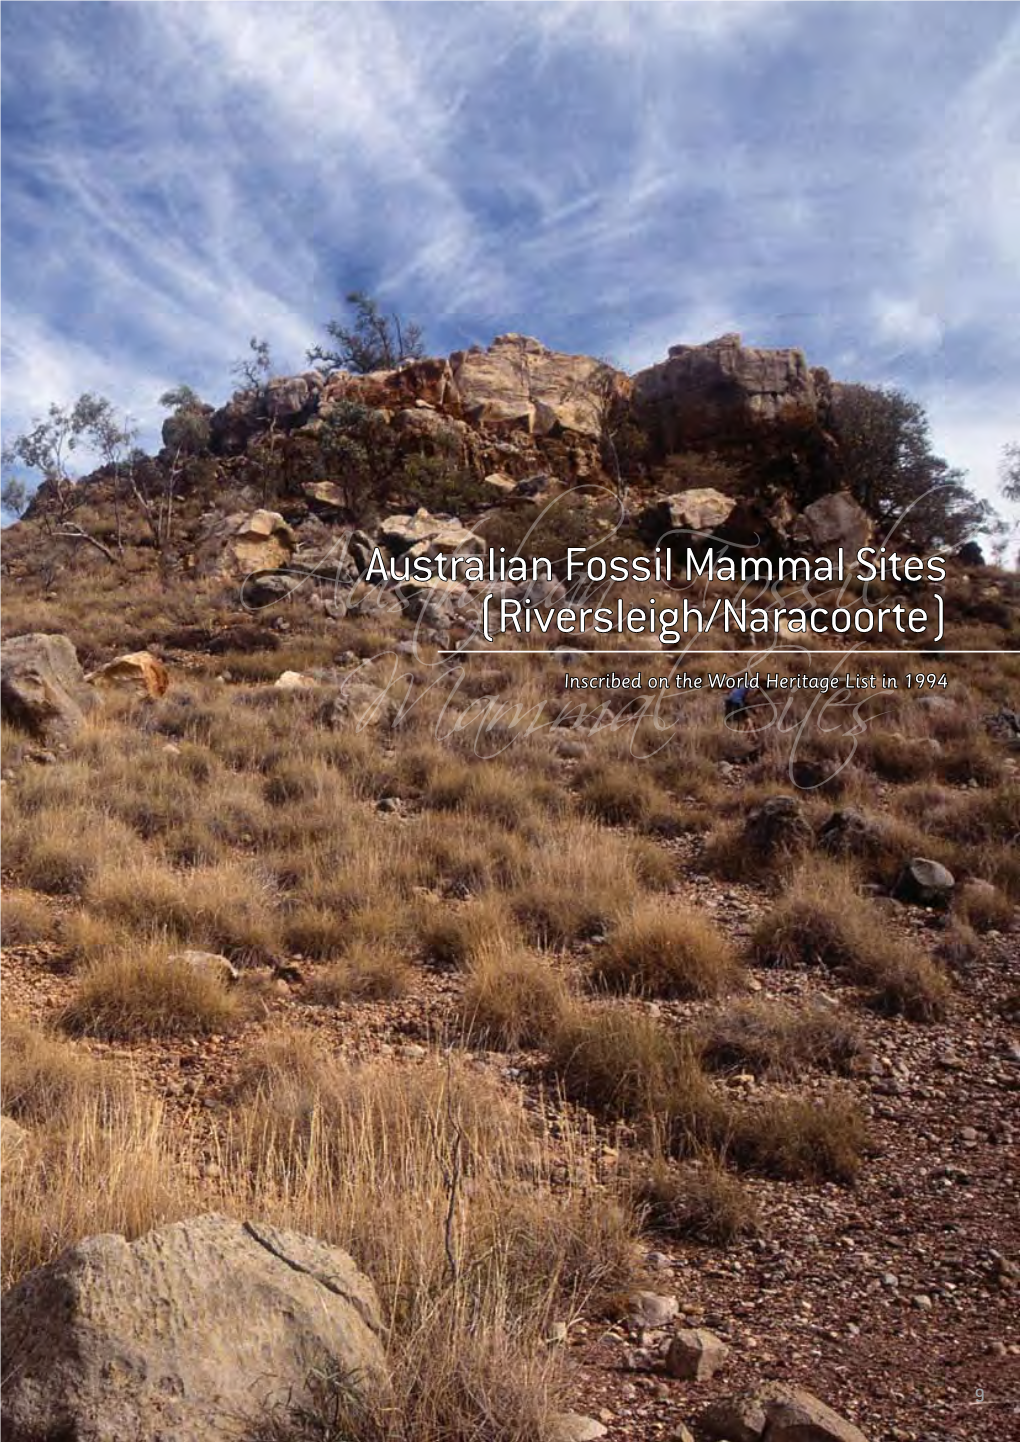 Australian Fossil Mammal Sites Factsheet